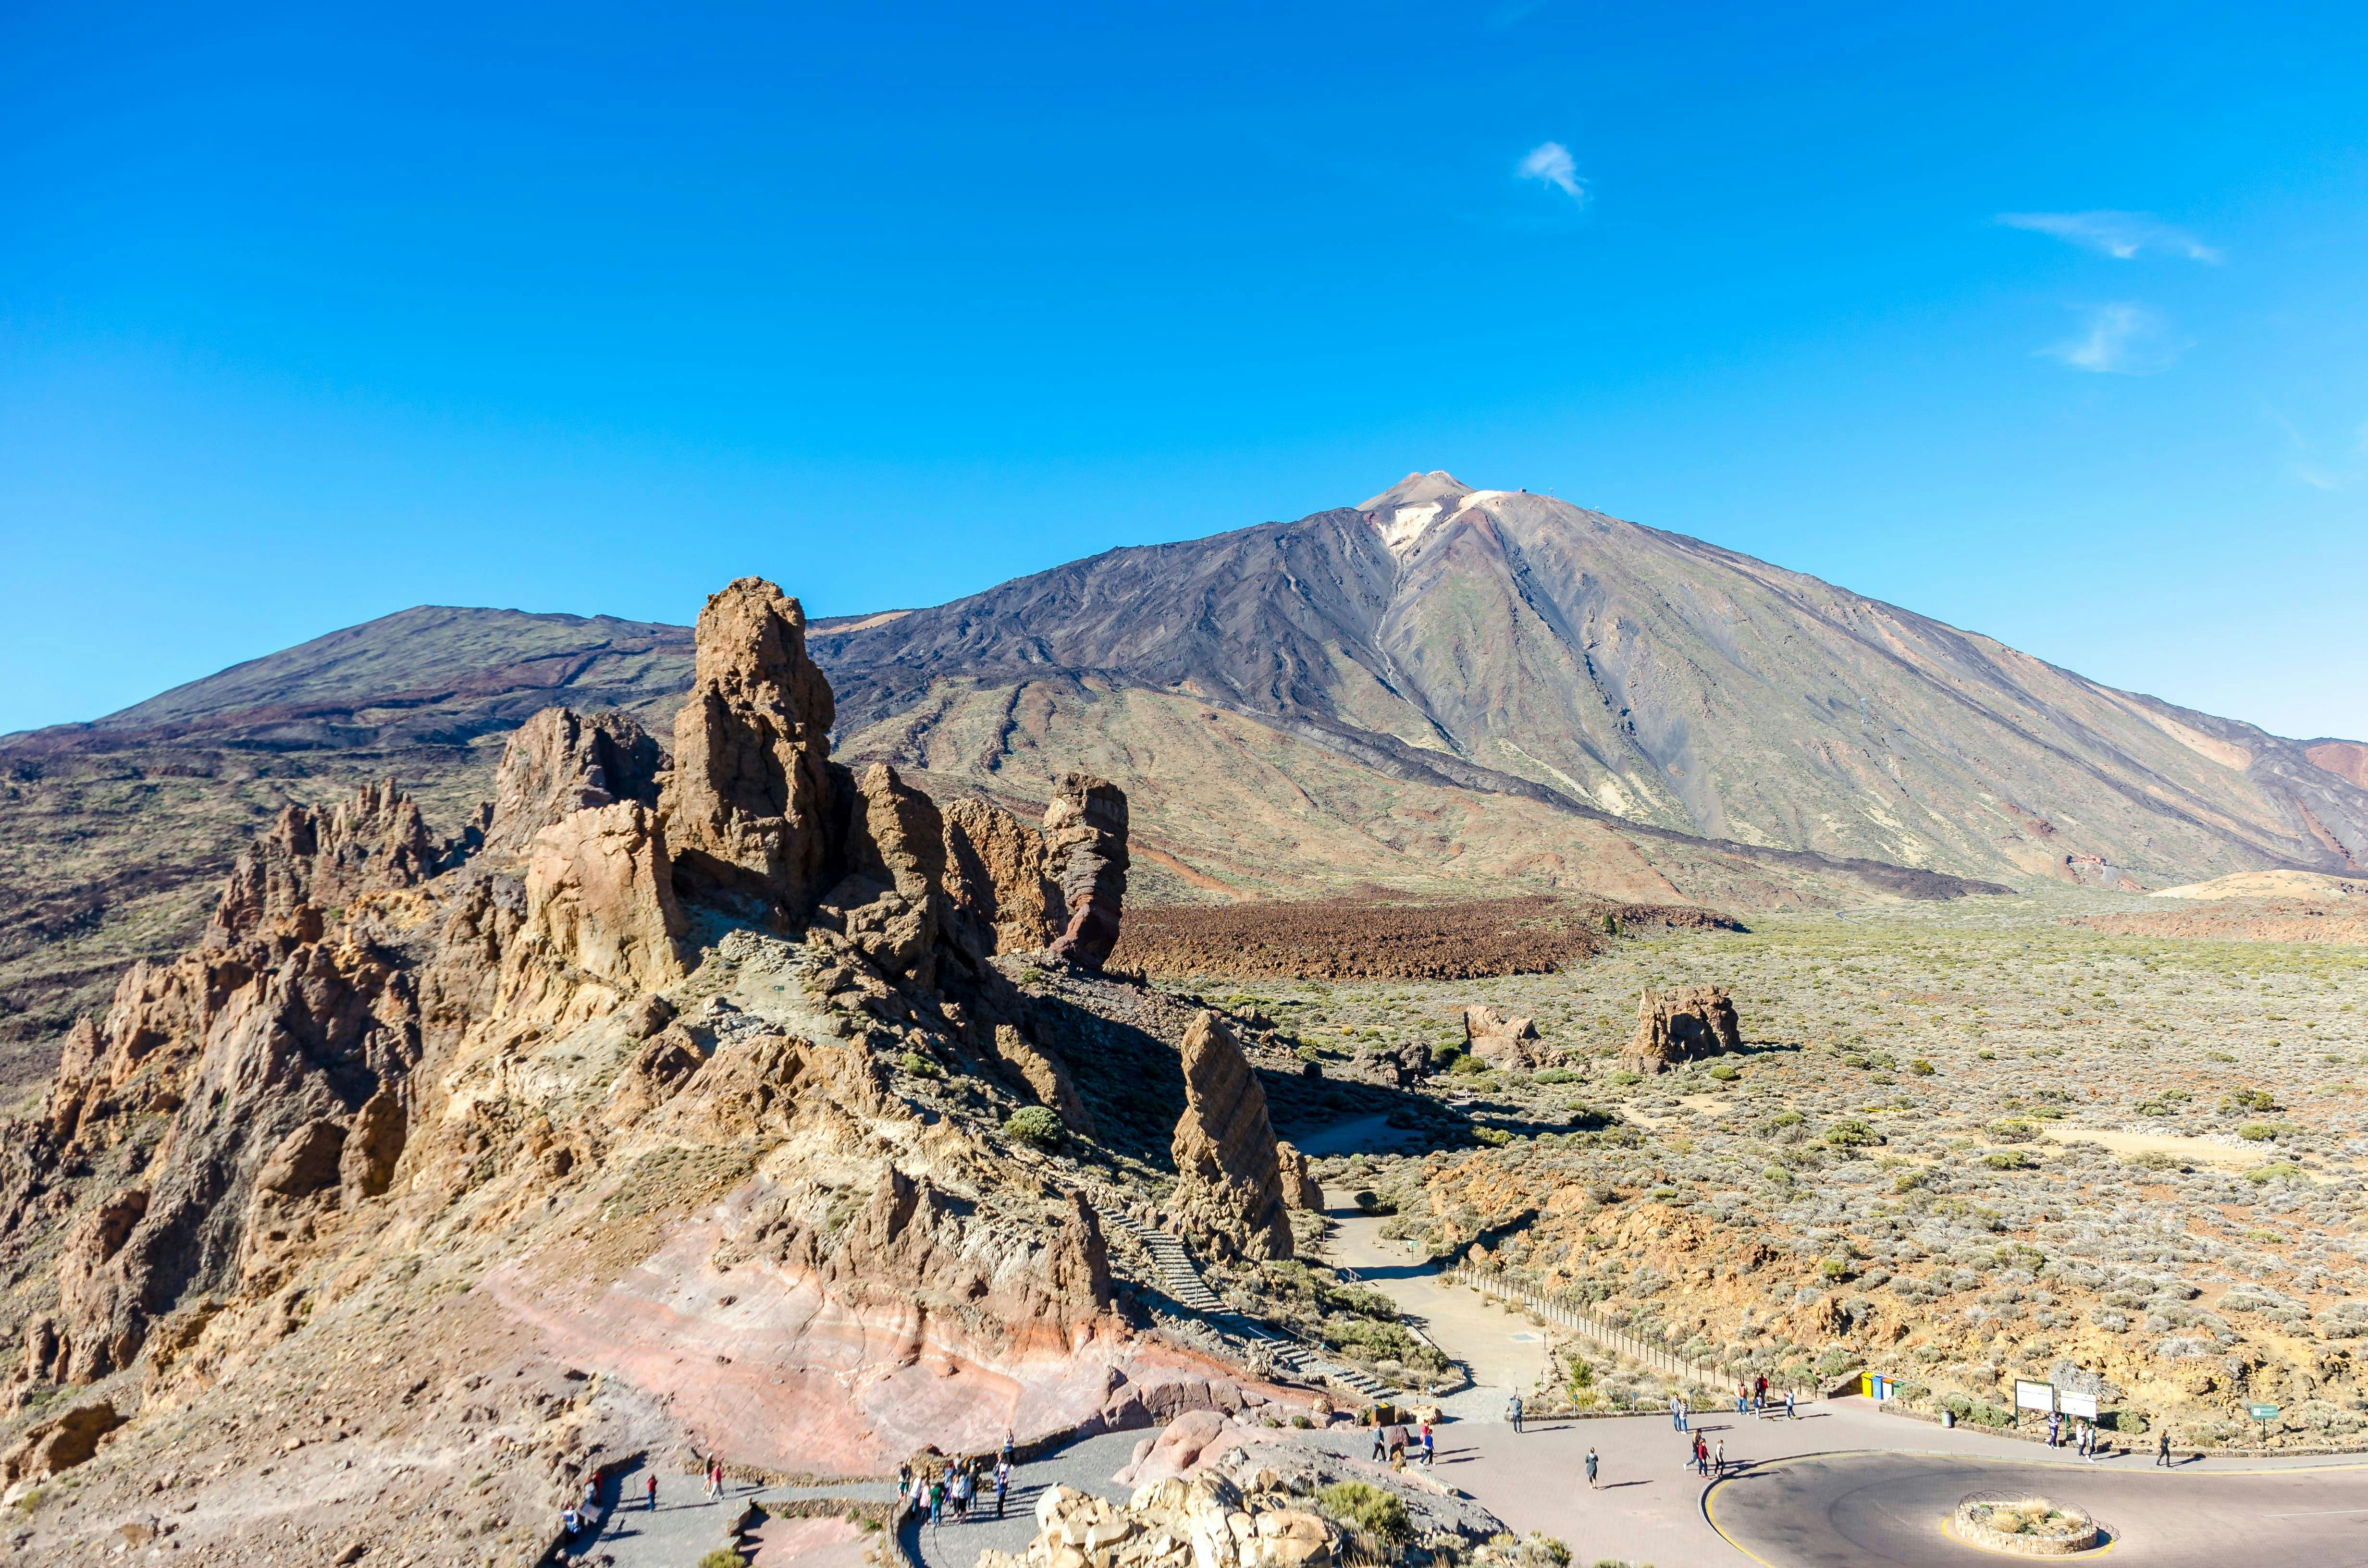 Rundtur til Teide, Masca og La Laguna fra nordlige Tenerife